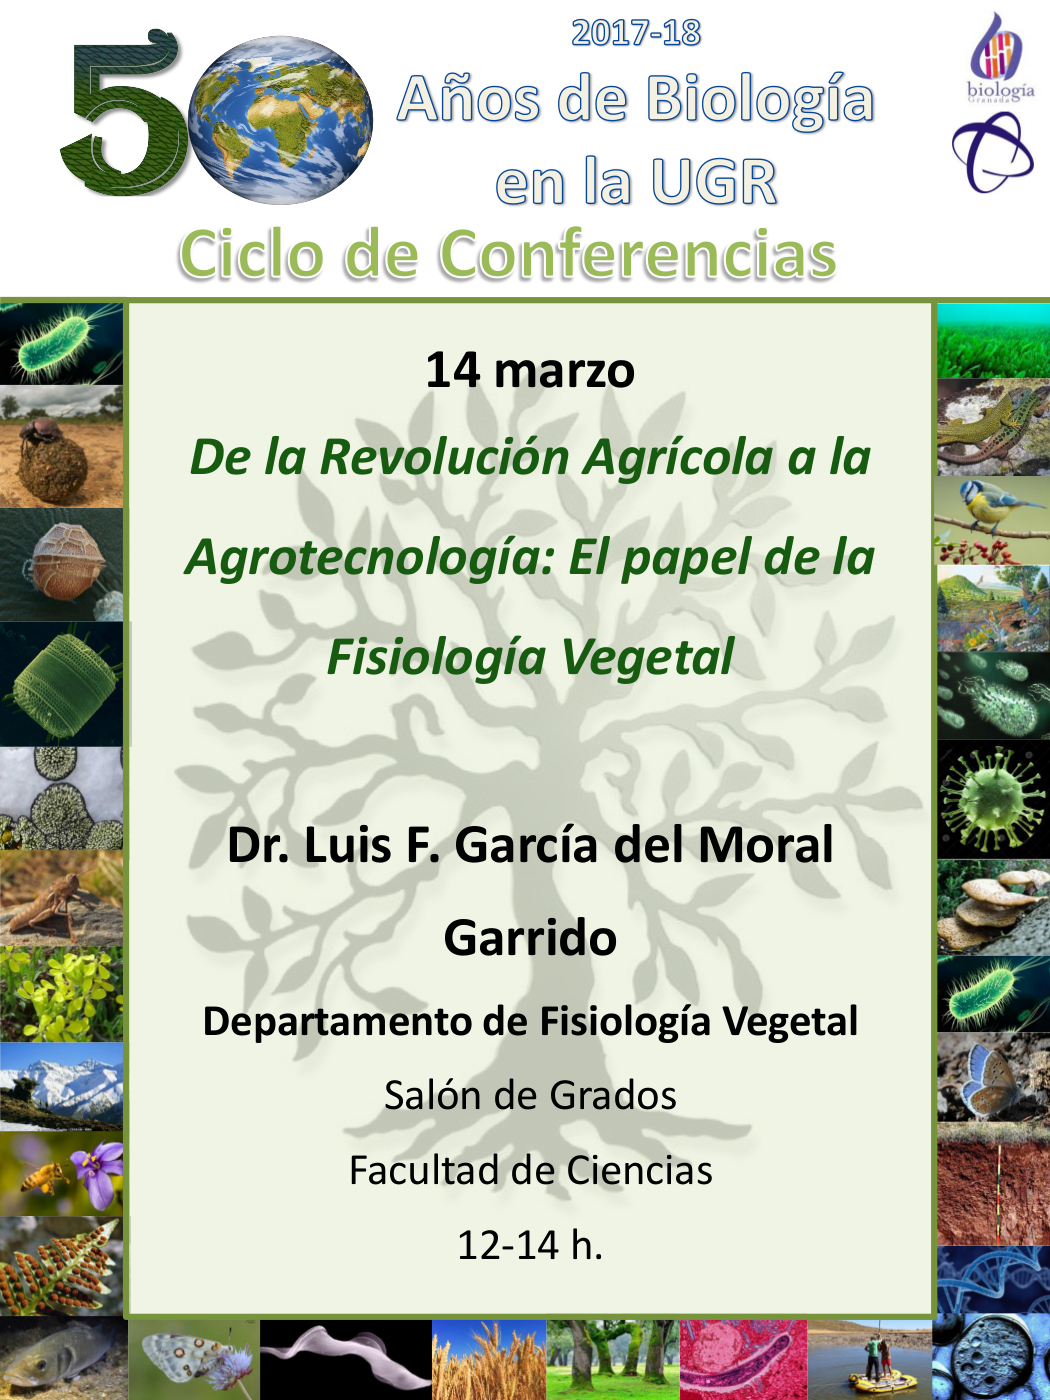 De la Revolución Agrícola a la Agrotecnología: El papel de la Fisiología Vegetal